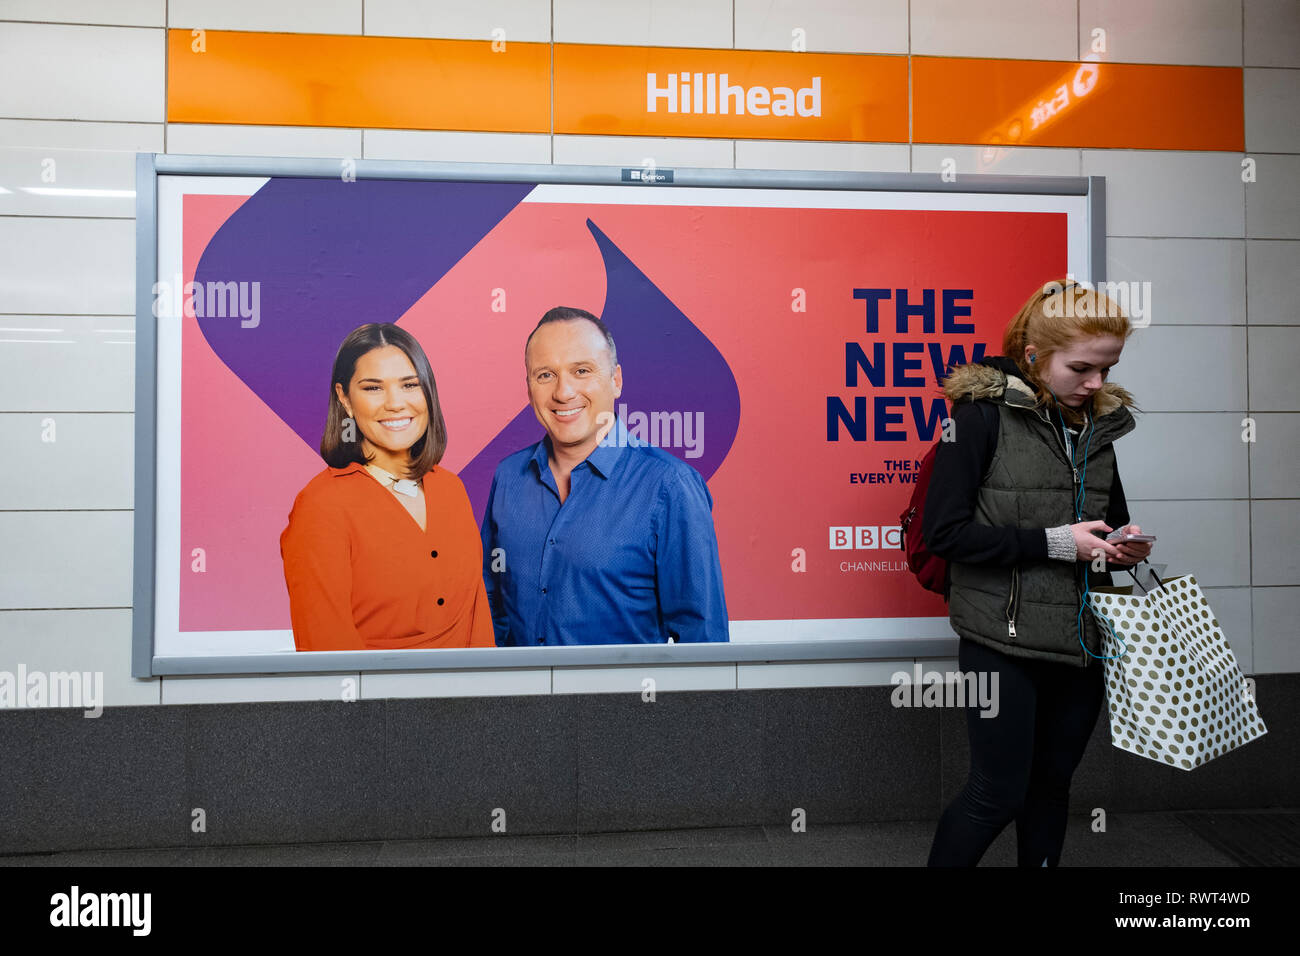 Las vallas publicitarias nuevo canal de televisión de la BBC de Escocia Evening News muestran las nueve y presentadores Rebecca Curran y Martin Geissler, dentro de la estación en el Foto de stock